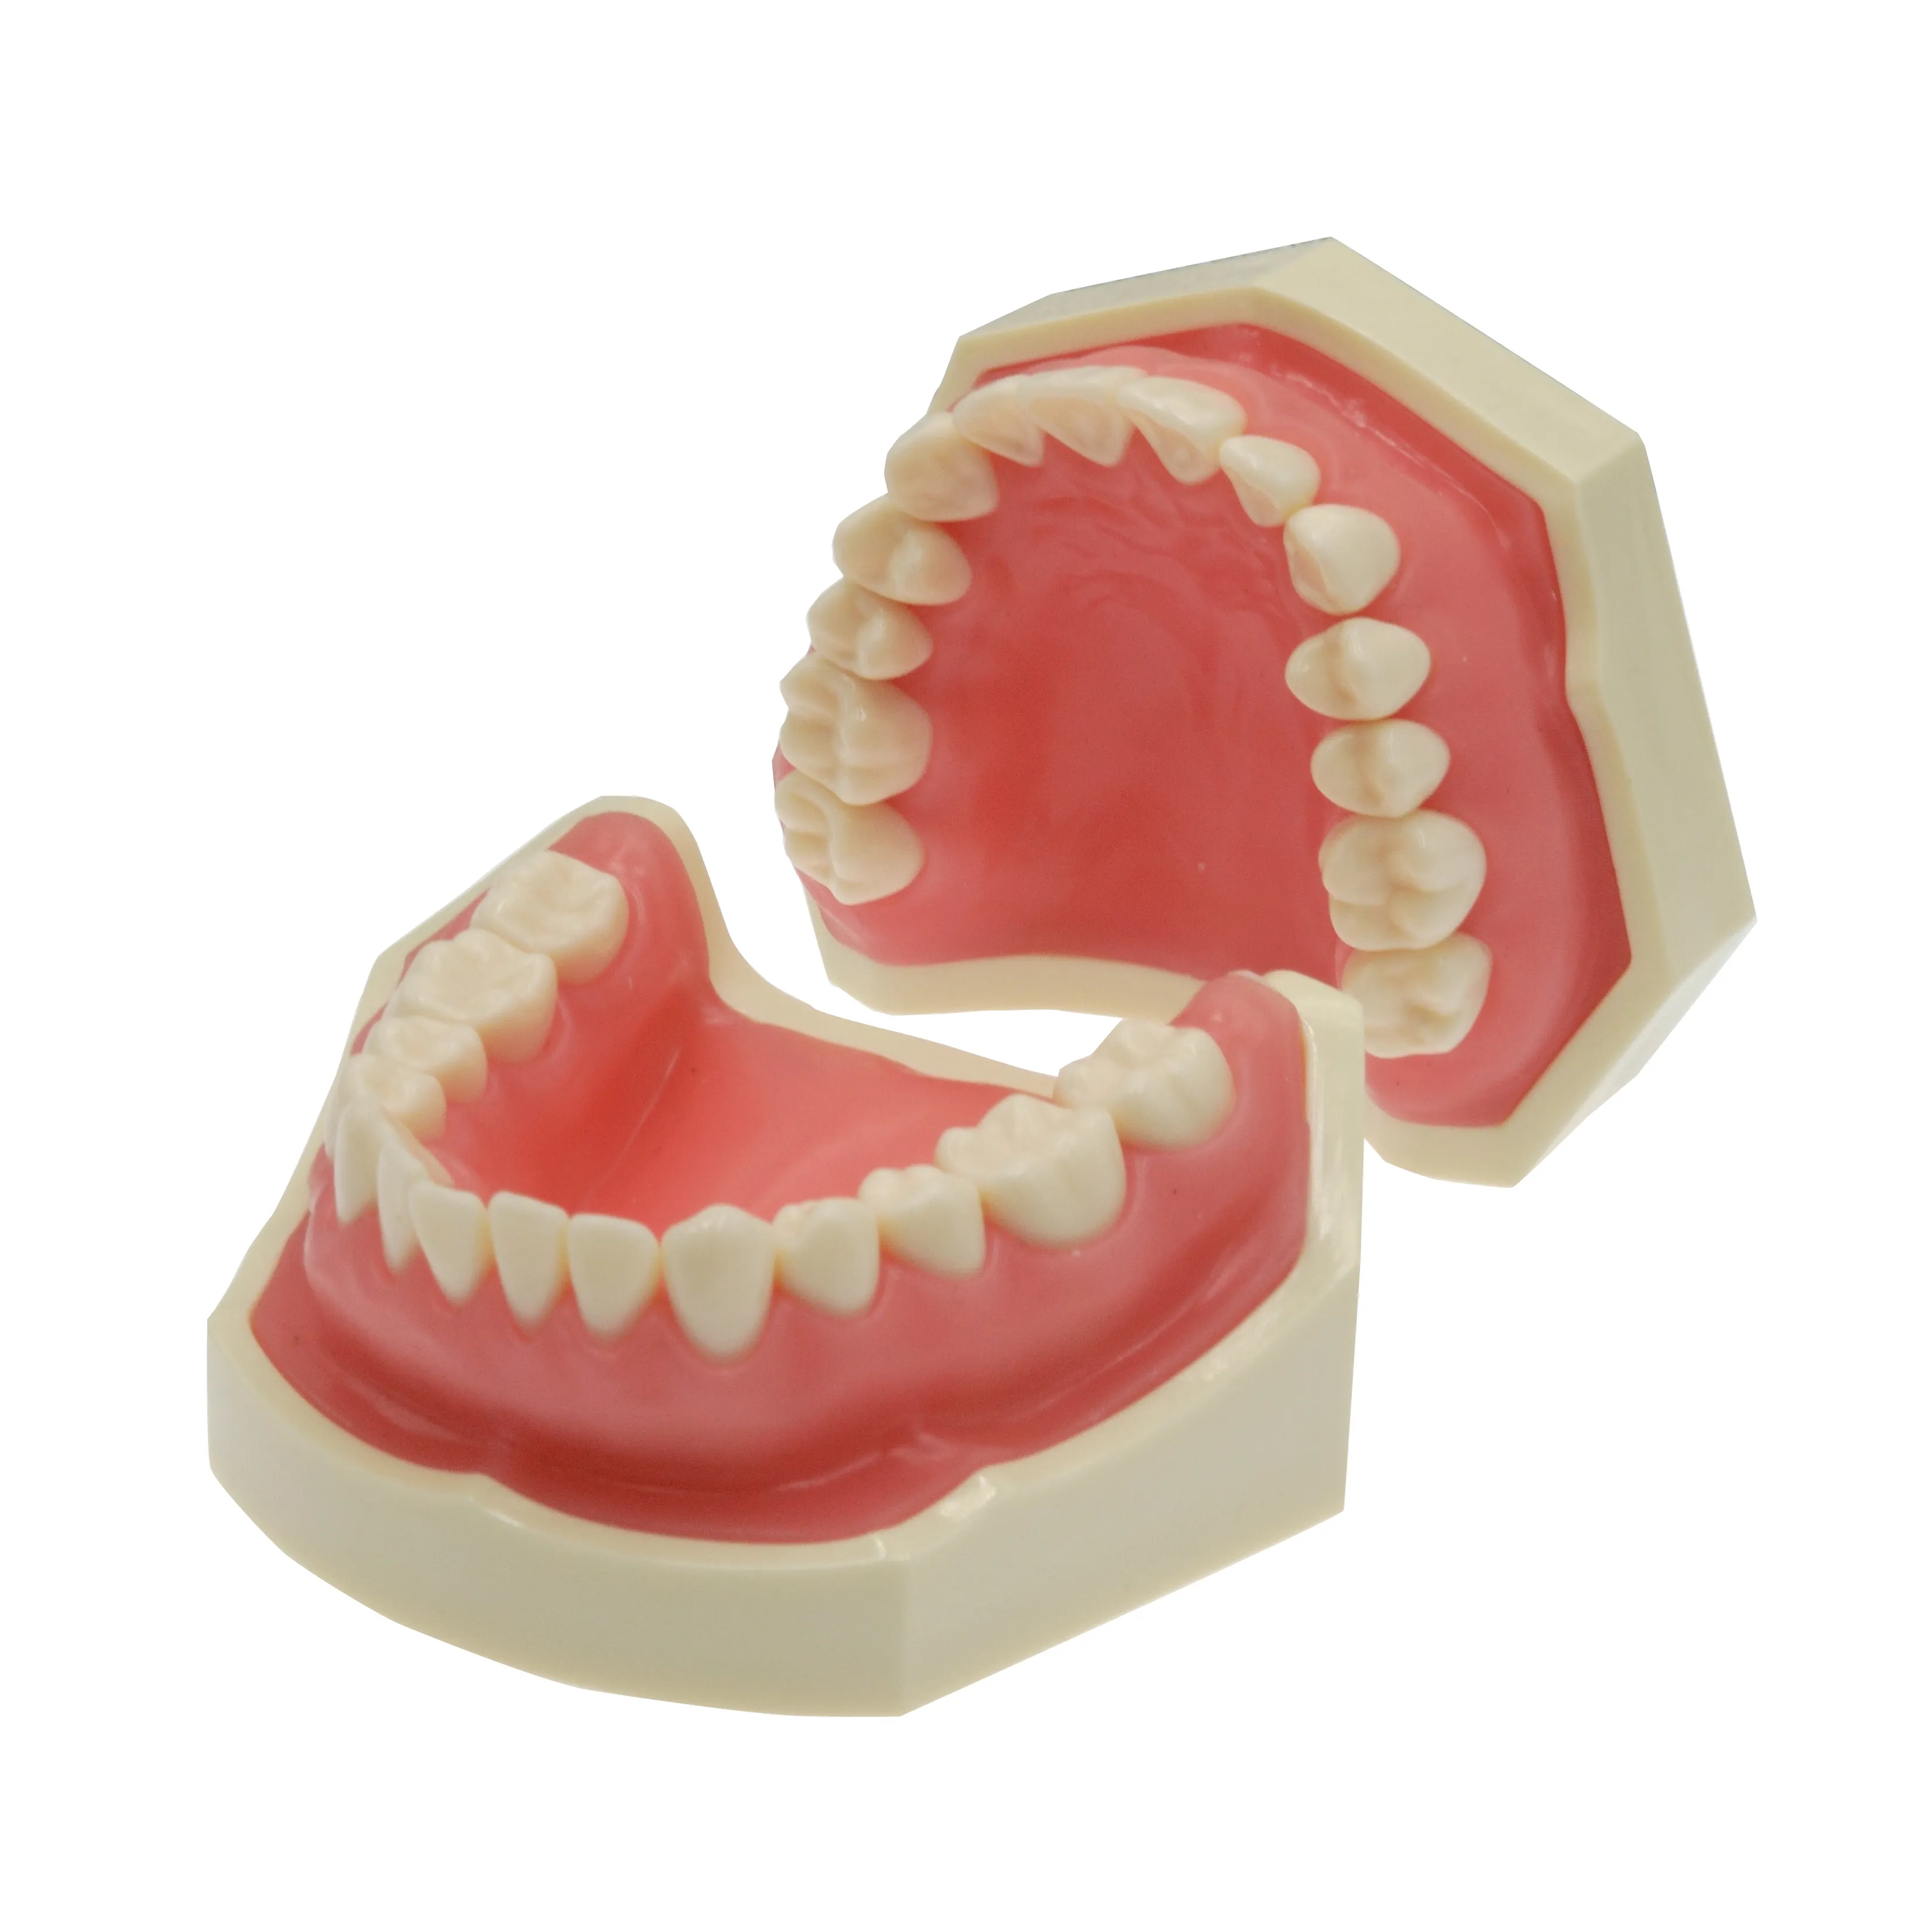 Modelo dentário padrão nissin com 32 peças, parafuso em dentes substituíveis para prática de preparação